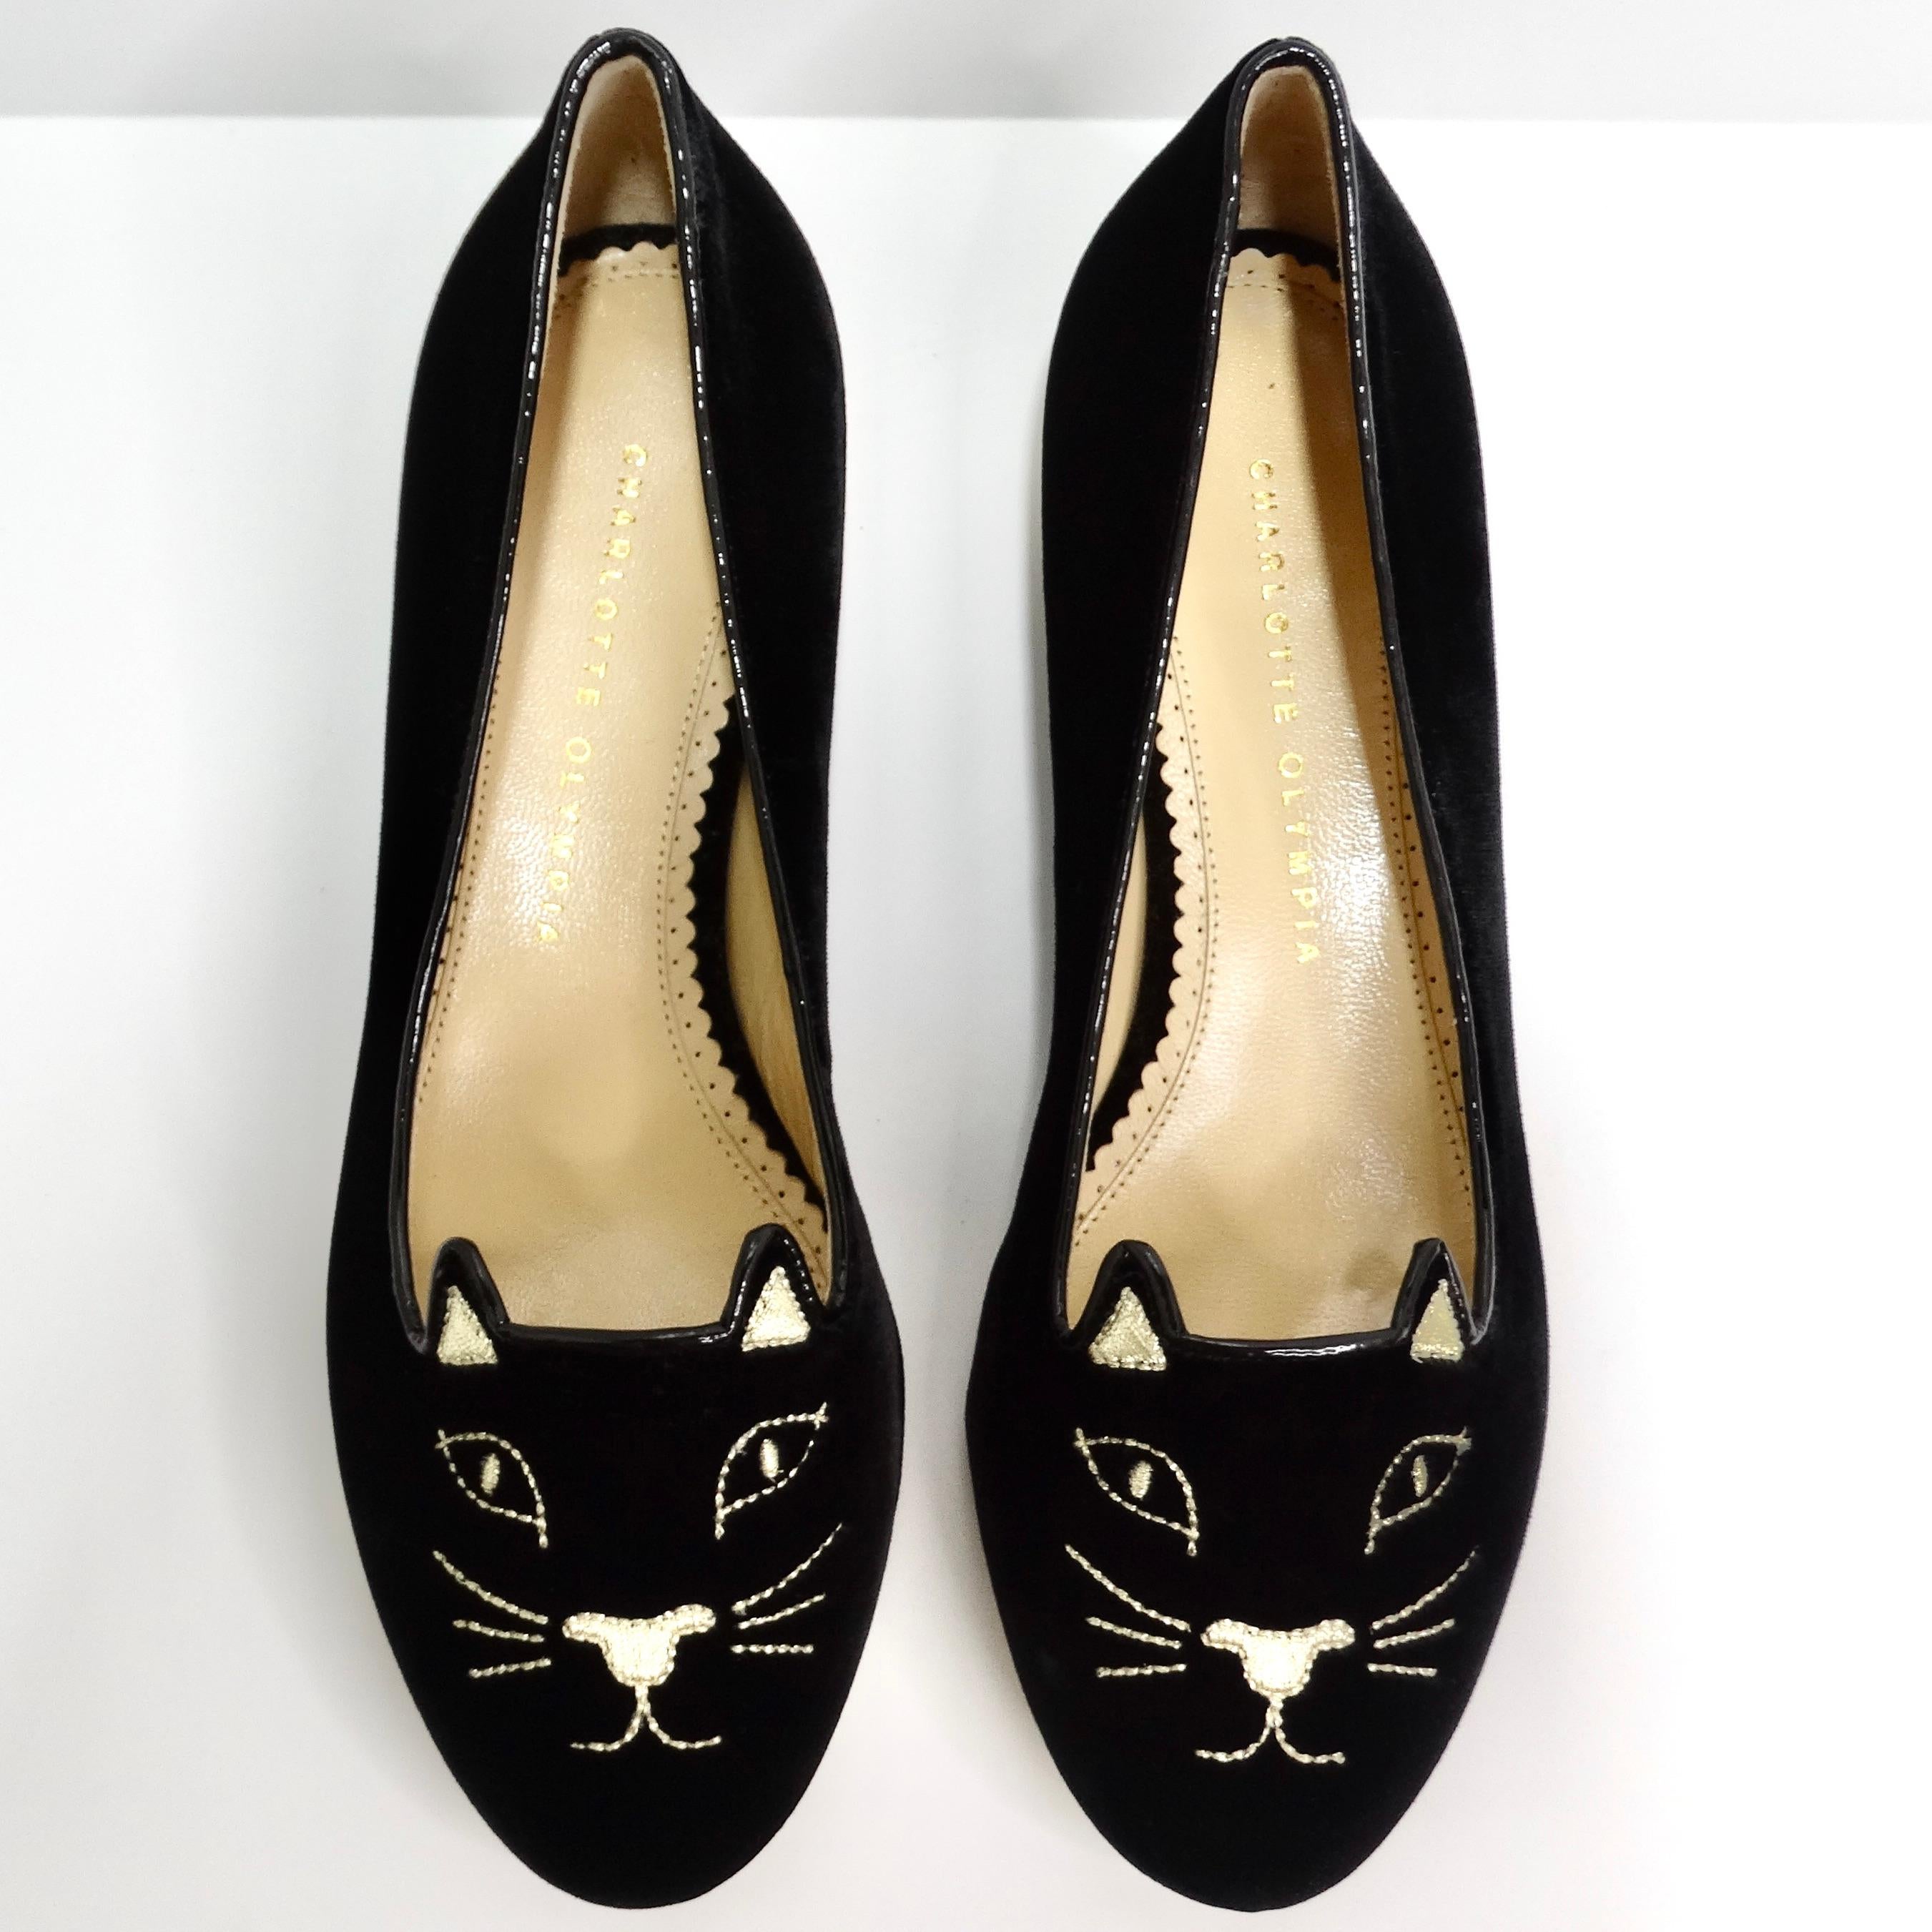 Voici les chaussures Charlotte Olympia Designer Signed Kitty Embroidered Flats, l'ultime pièce ludique pour les amoureux des chats. Ces chaussures plates en velours noir sont ornées d'une délicieuse broderie de chaton en métal doré sur le bout du